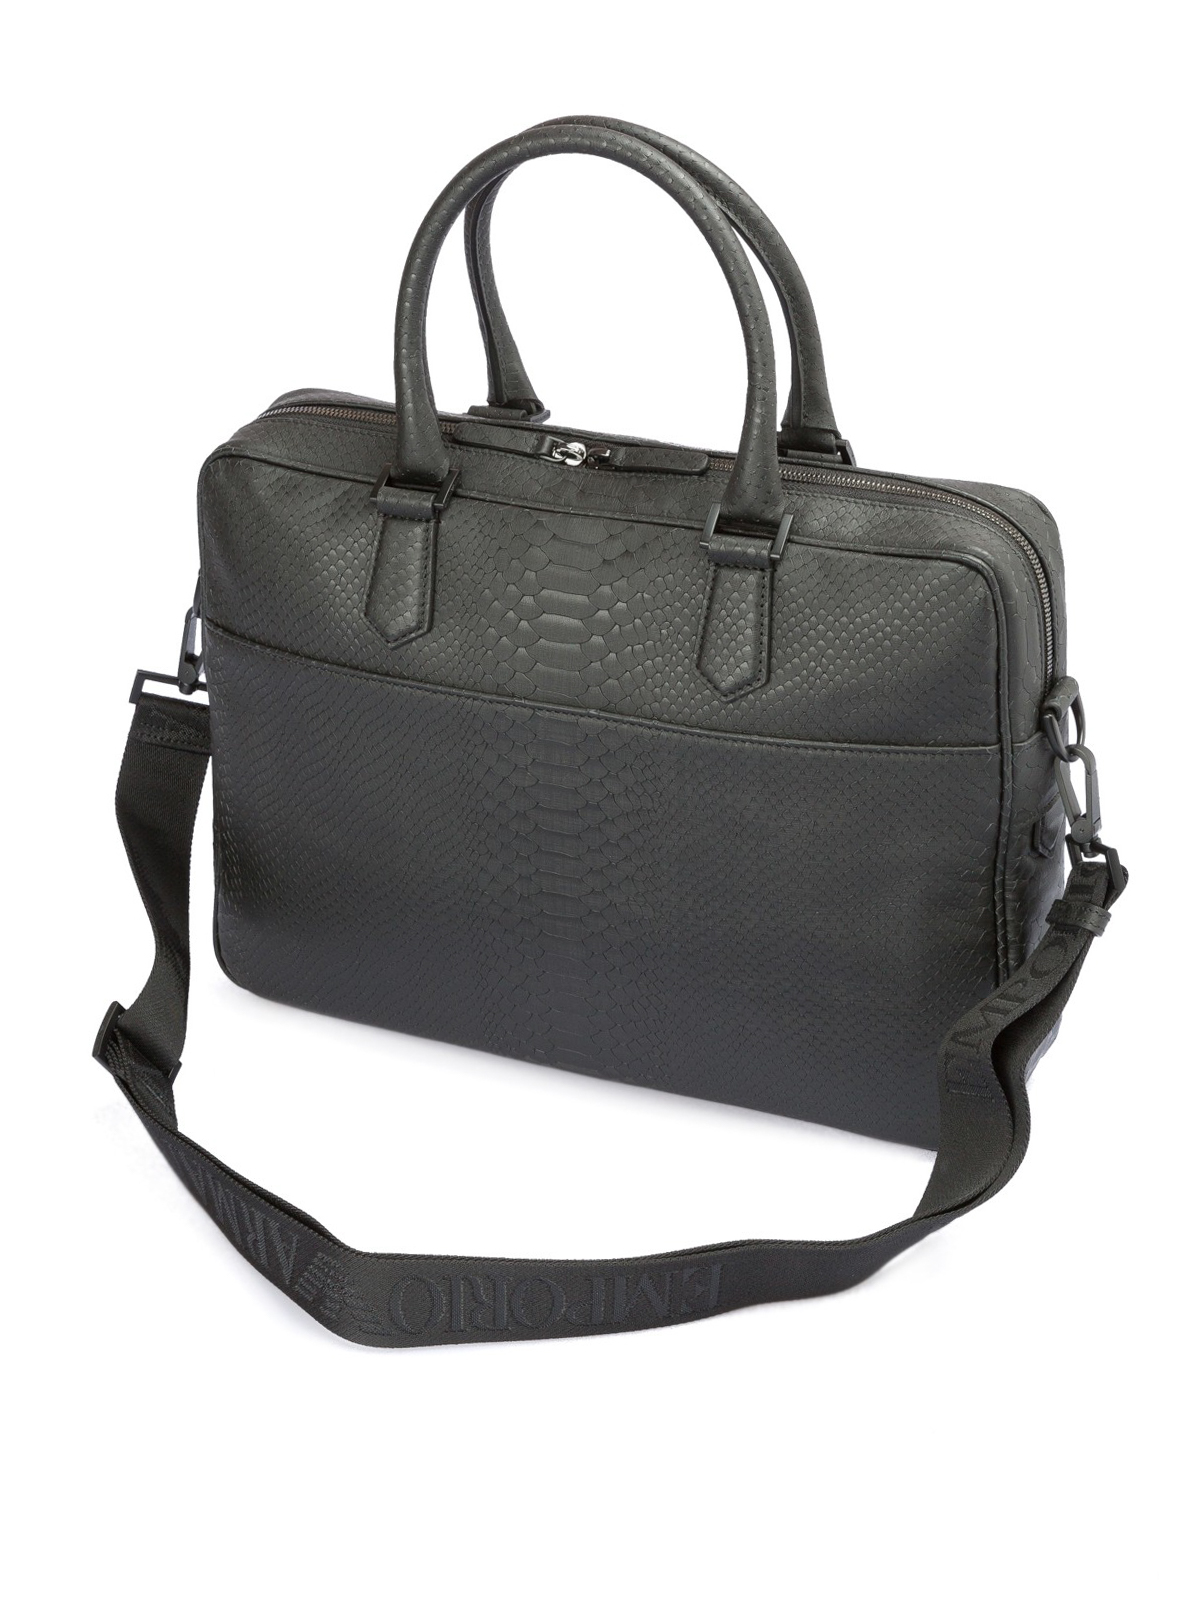 armani leather briefcase